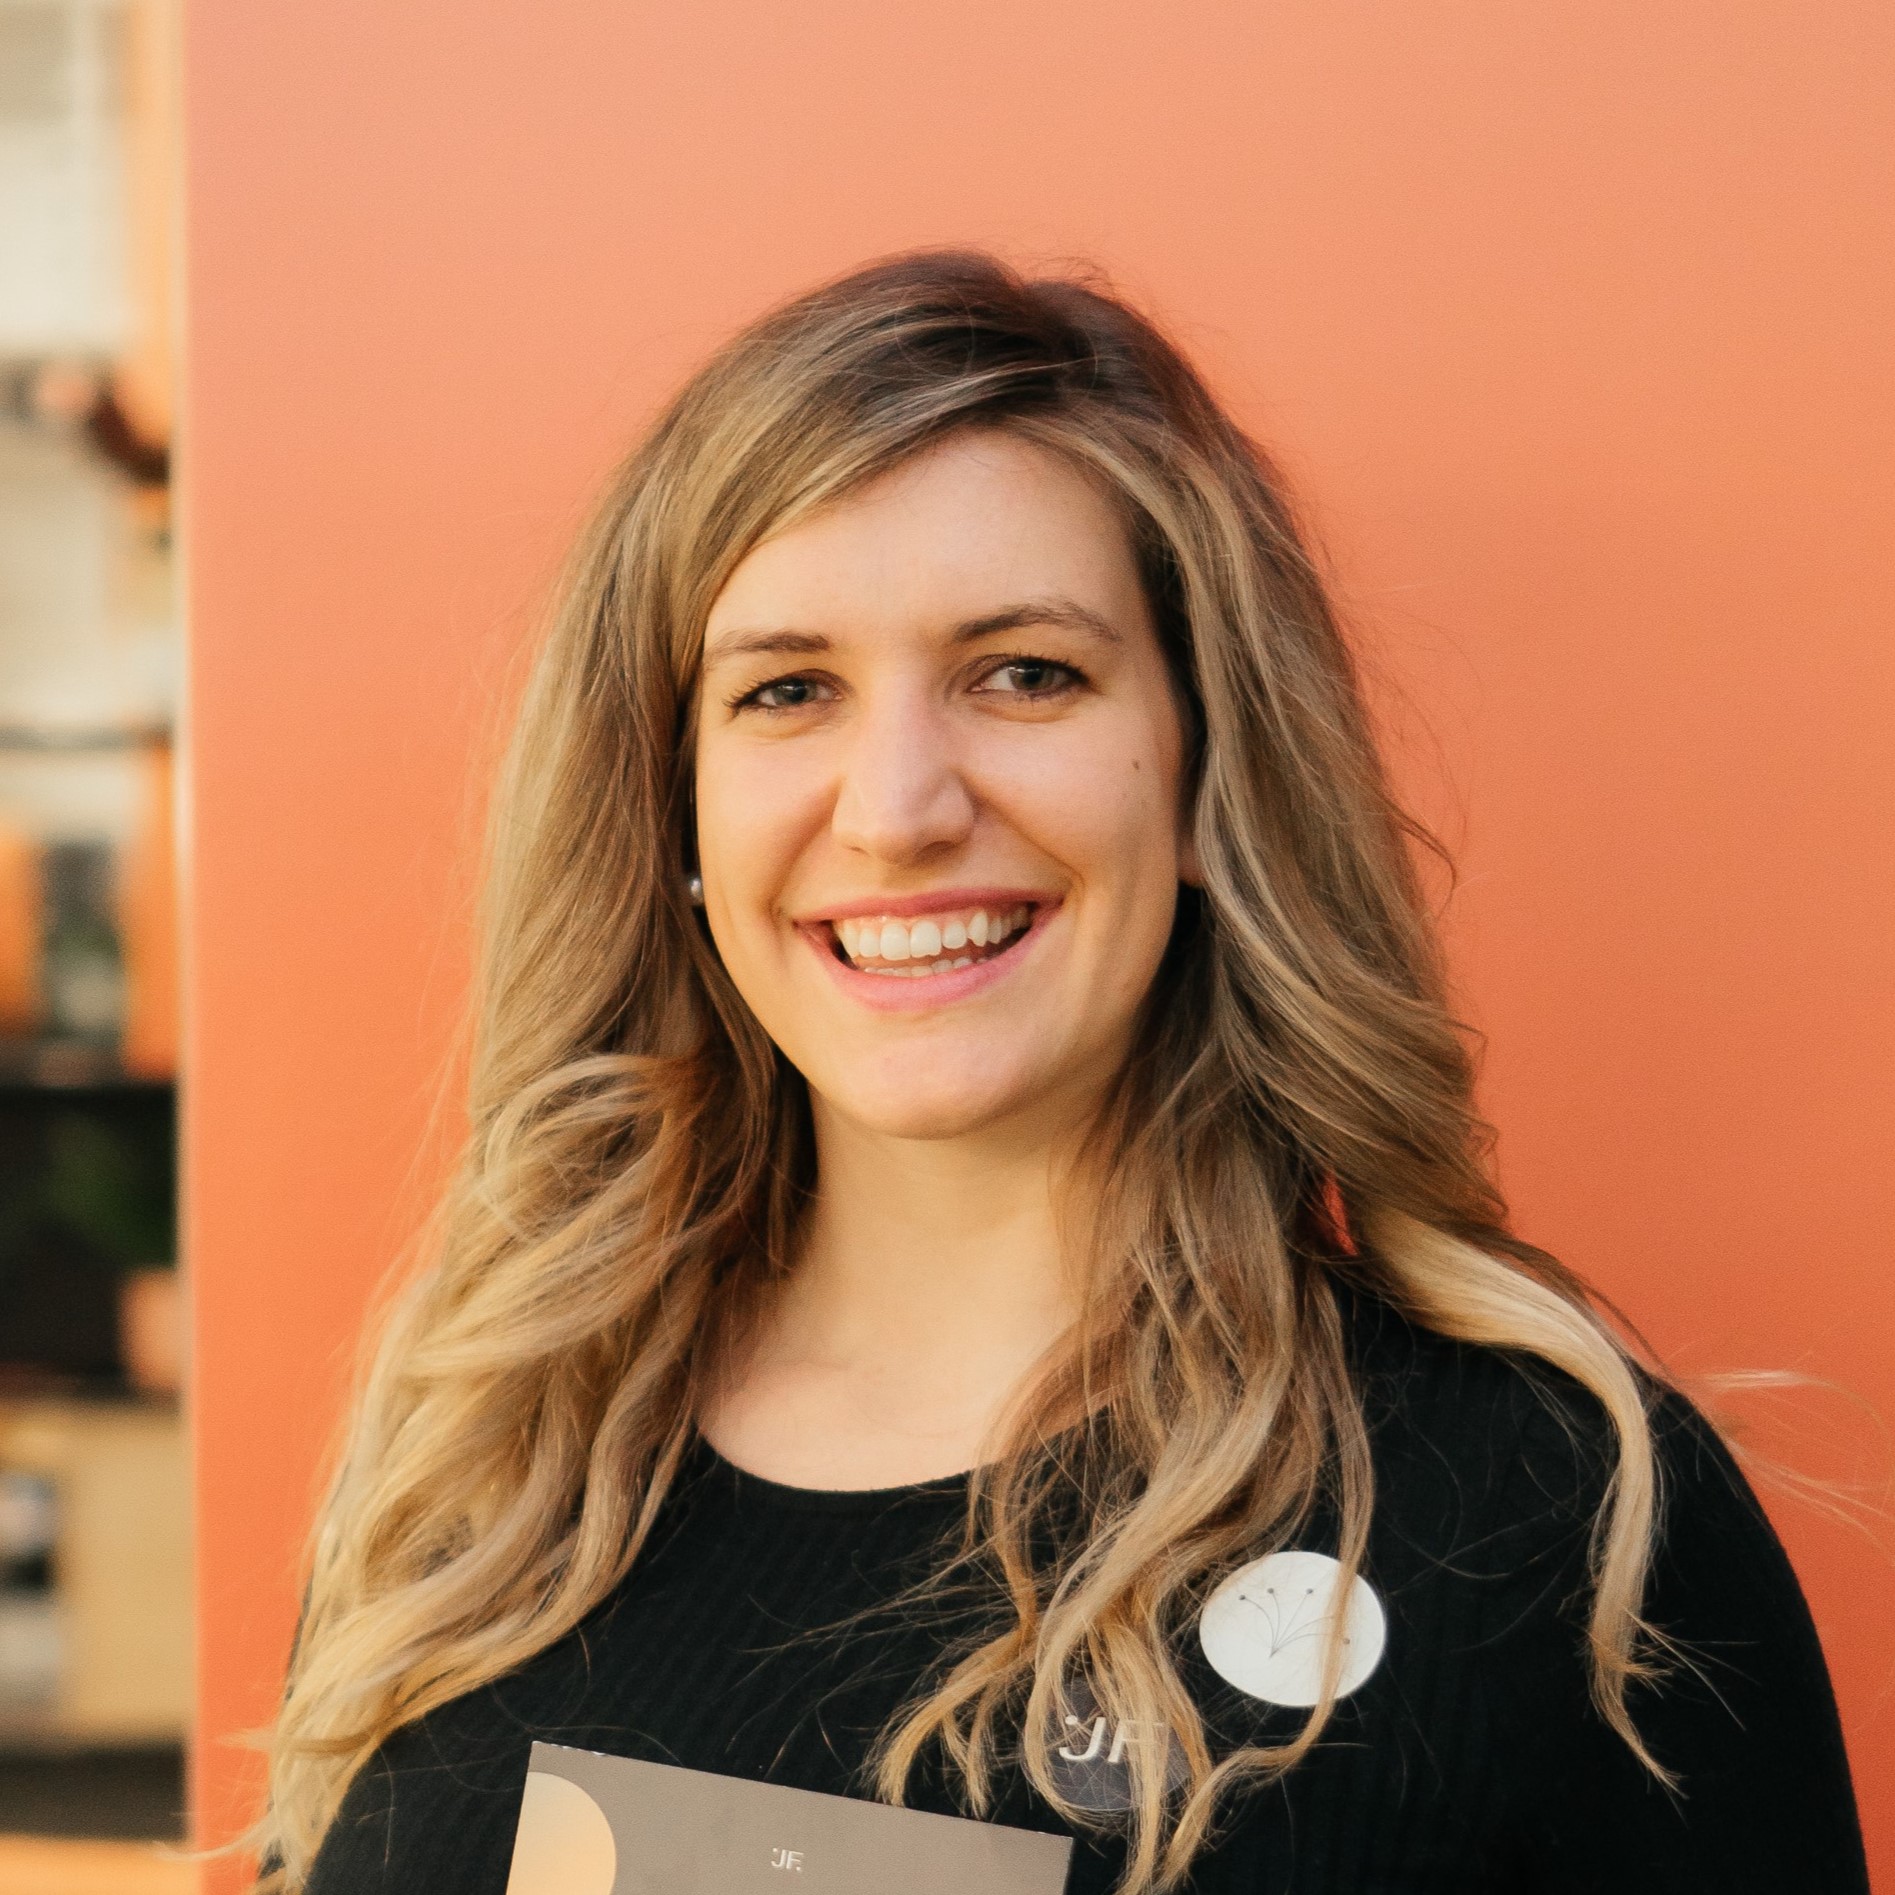 Lily Elsner, Founder of Jack Fertility, smiling wearing black top in front of orange background